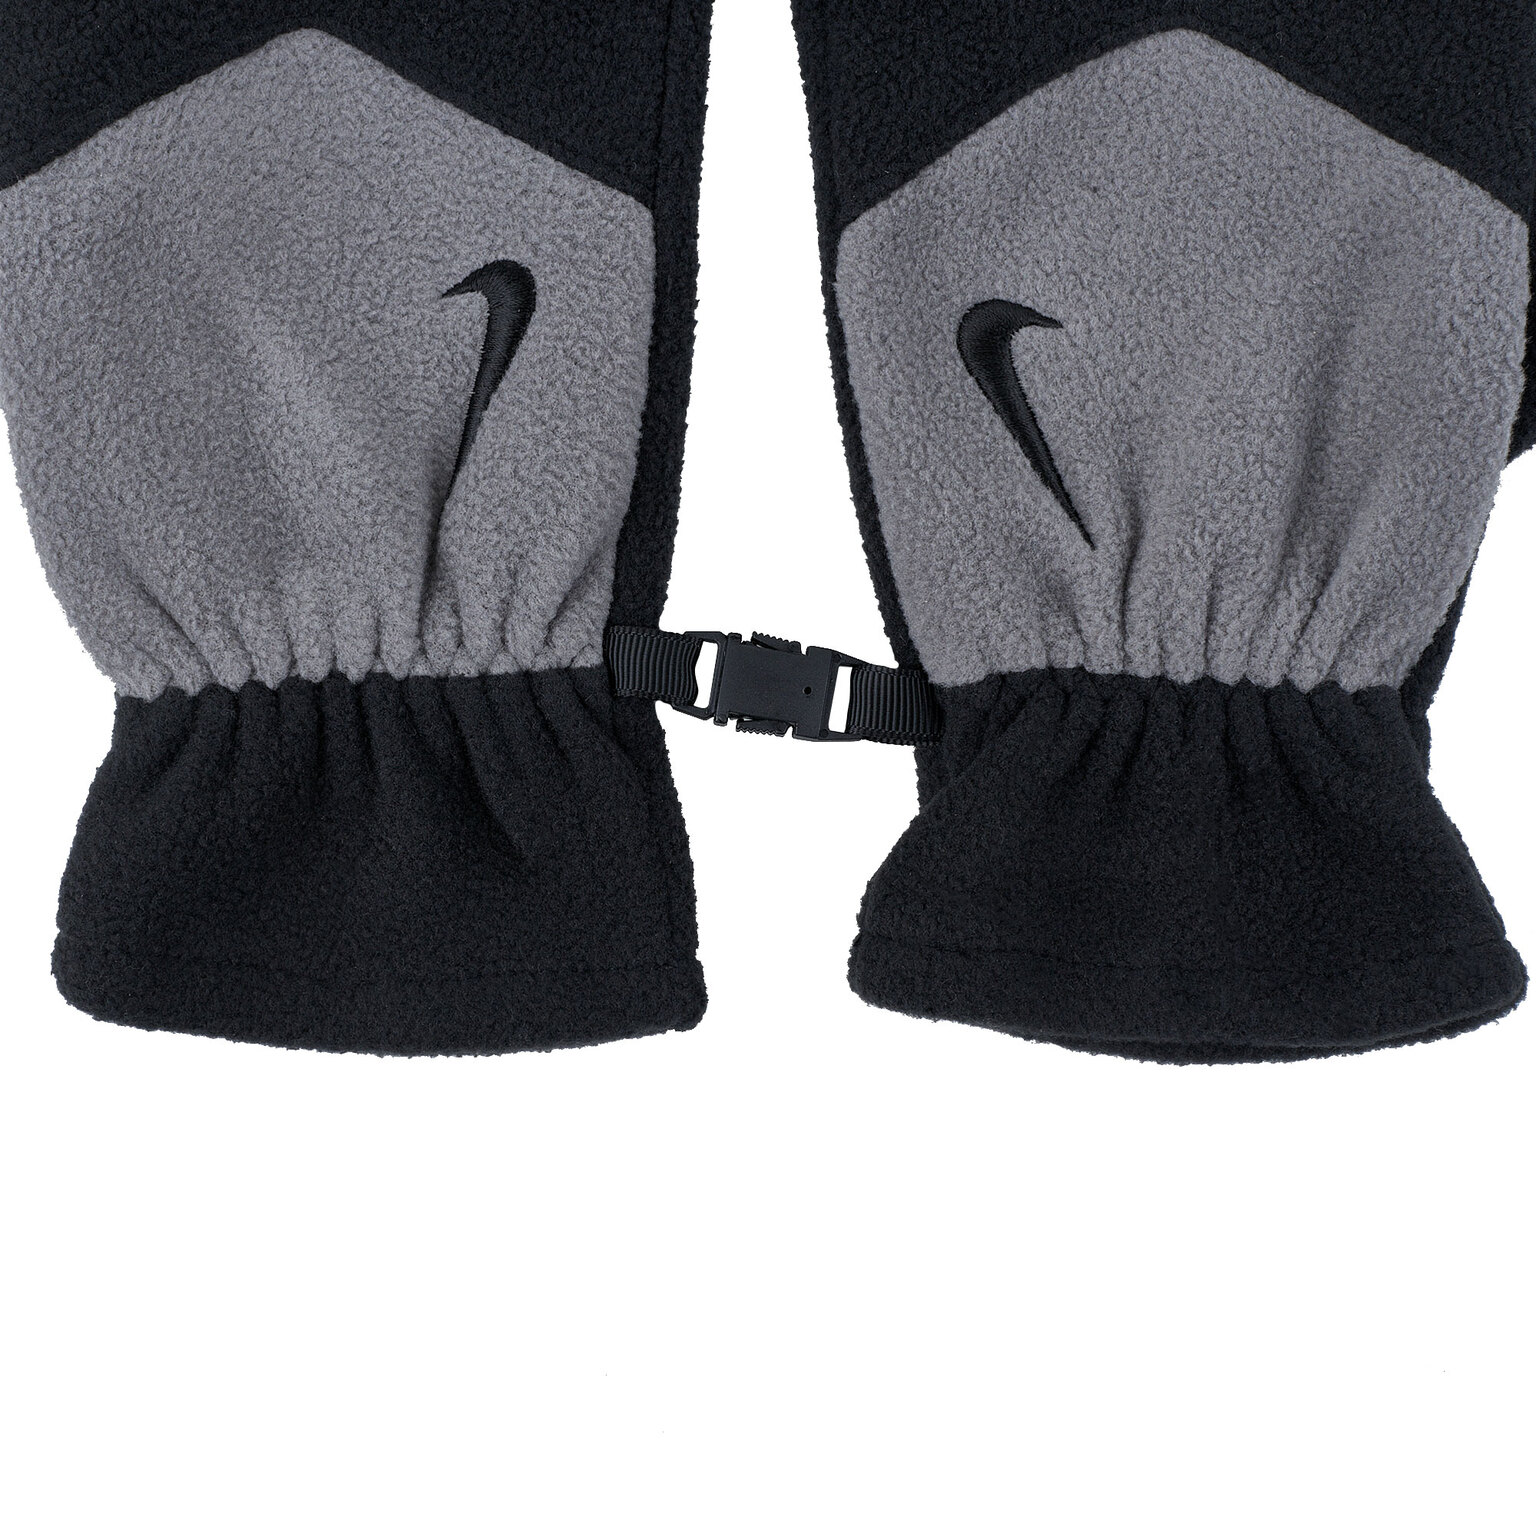 Перчатки тренировочные Nike Fleece Tech N.WG.C3.035